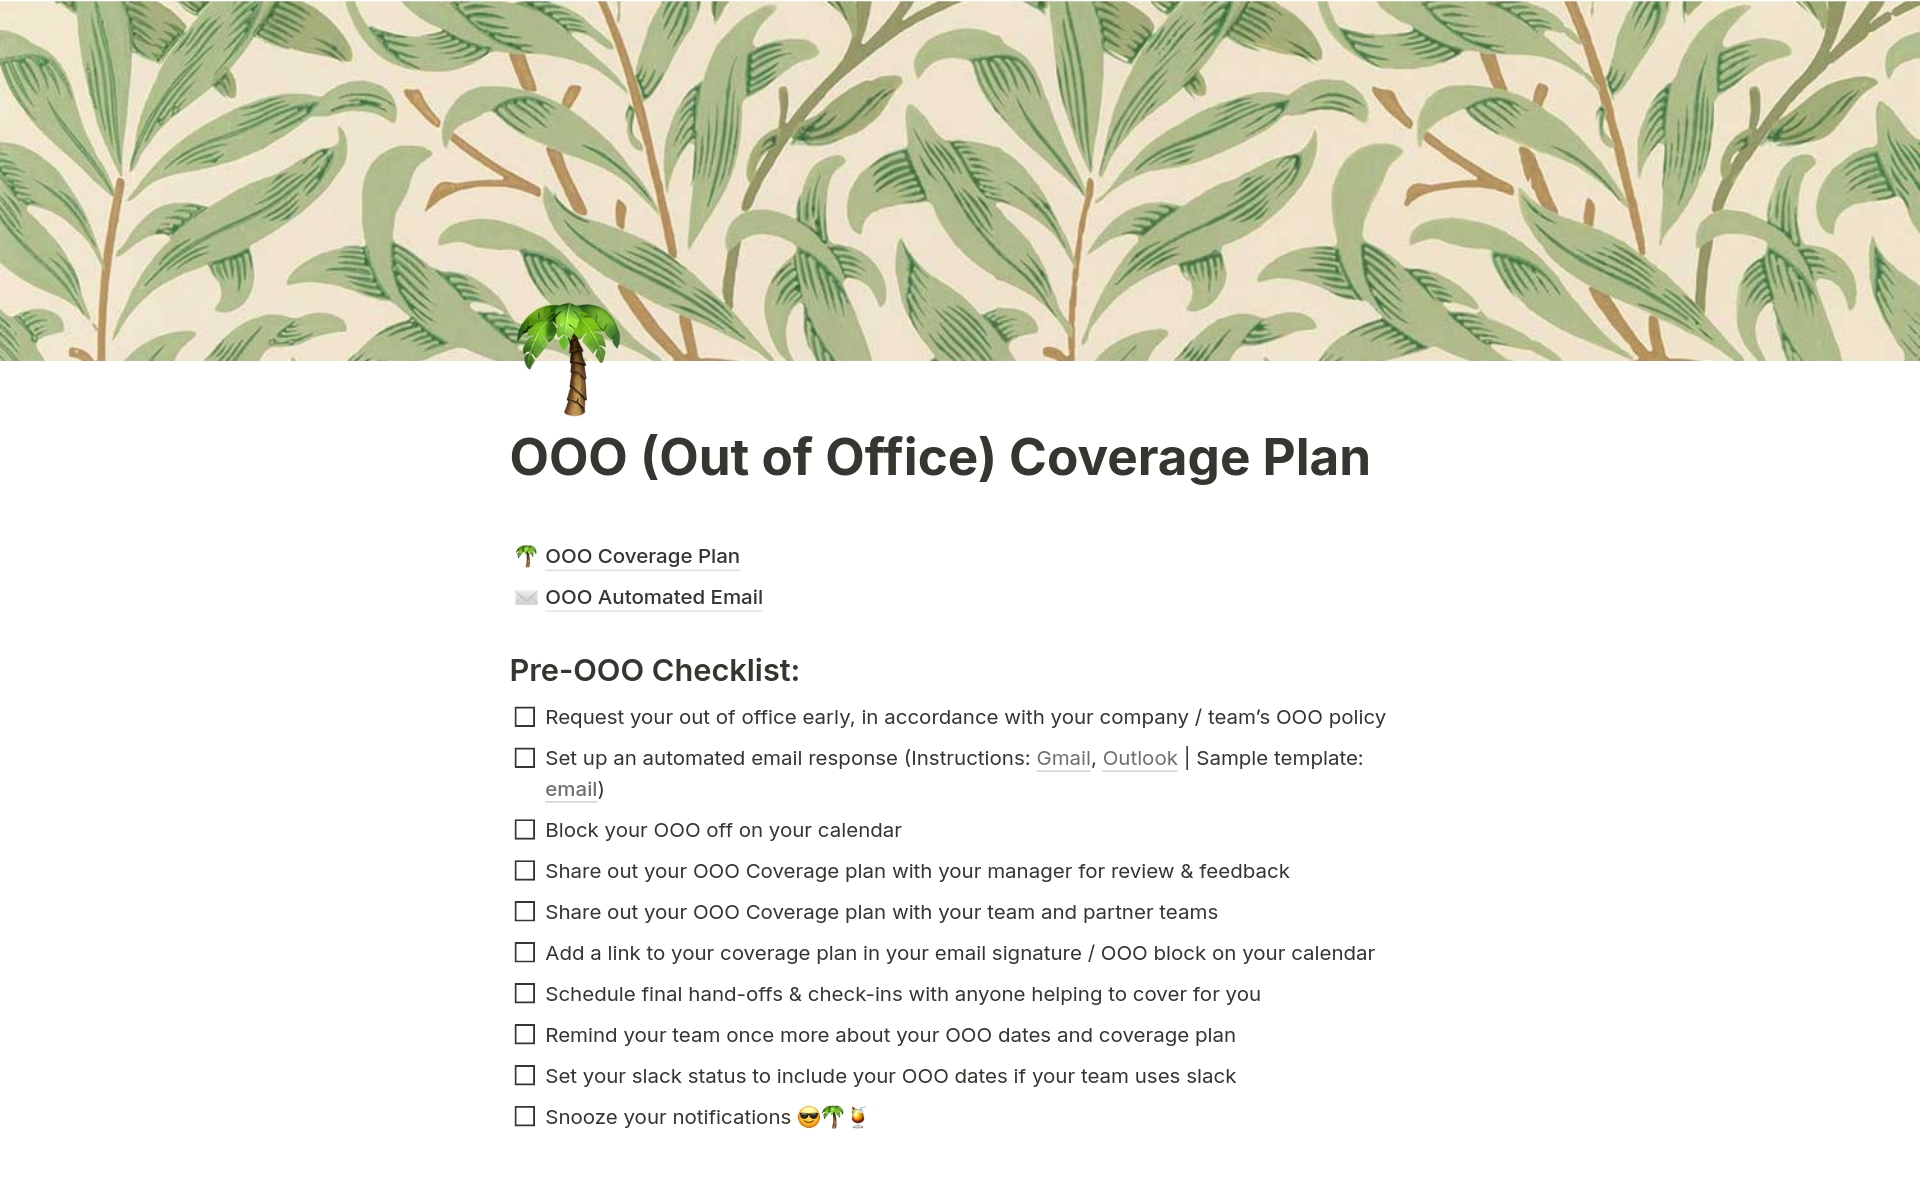 Vista previa de plantilla para OOO (Out of Office) Coverage Plan